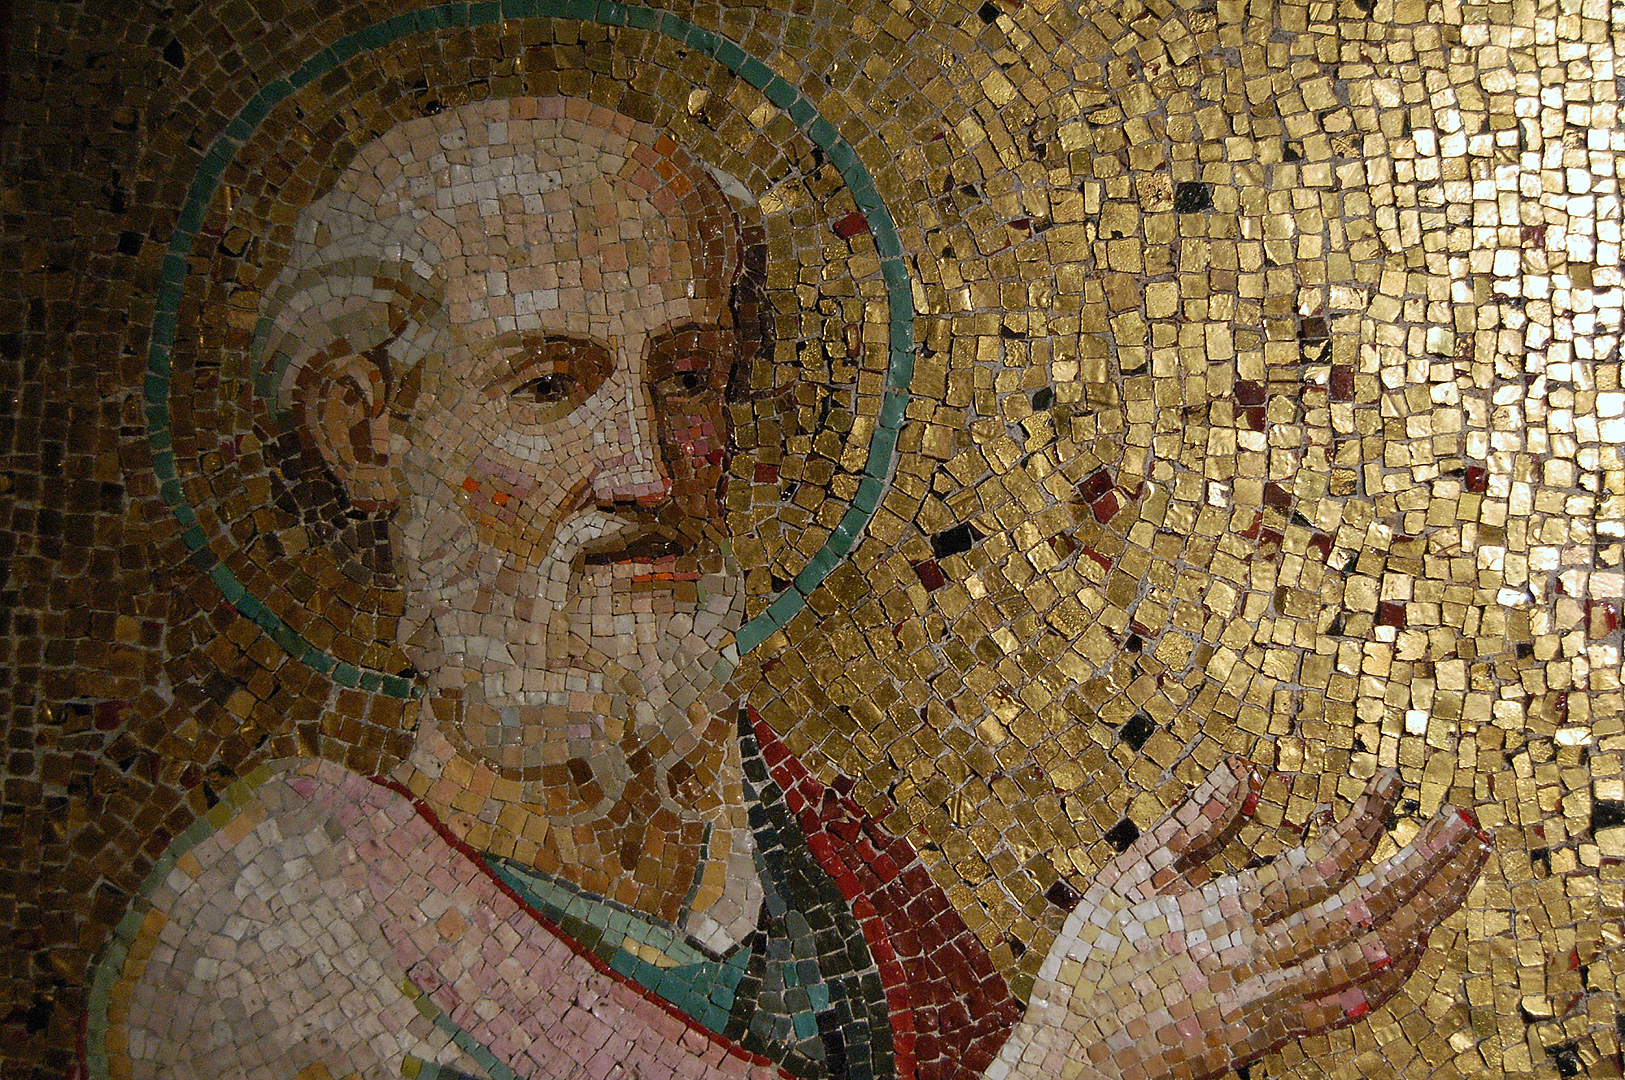 De apostel Paulus, mozaïek, Rome; The apostle Paul, mosaic, Rome